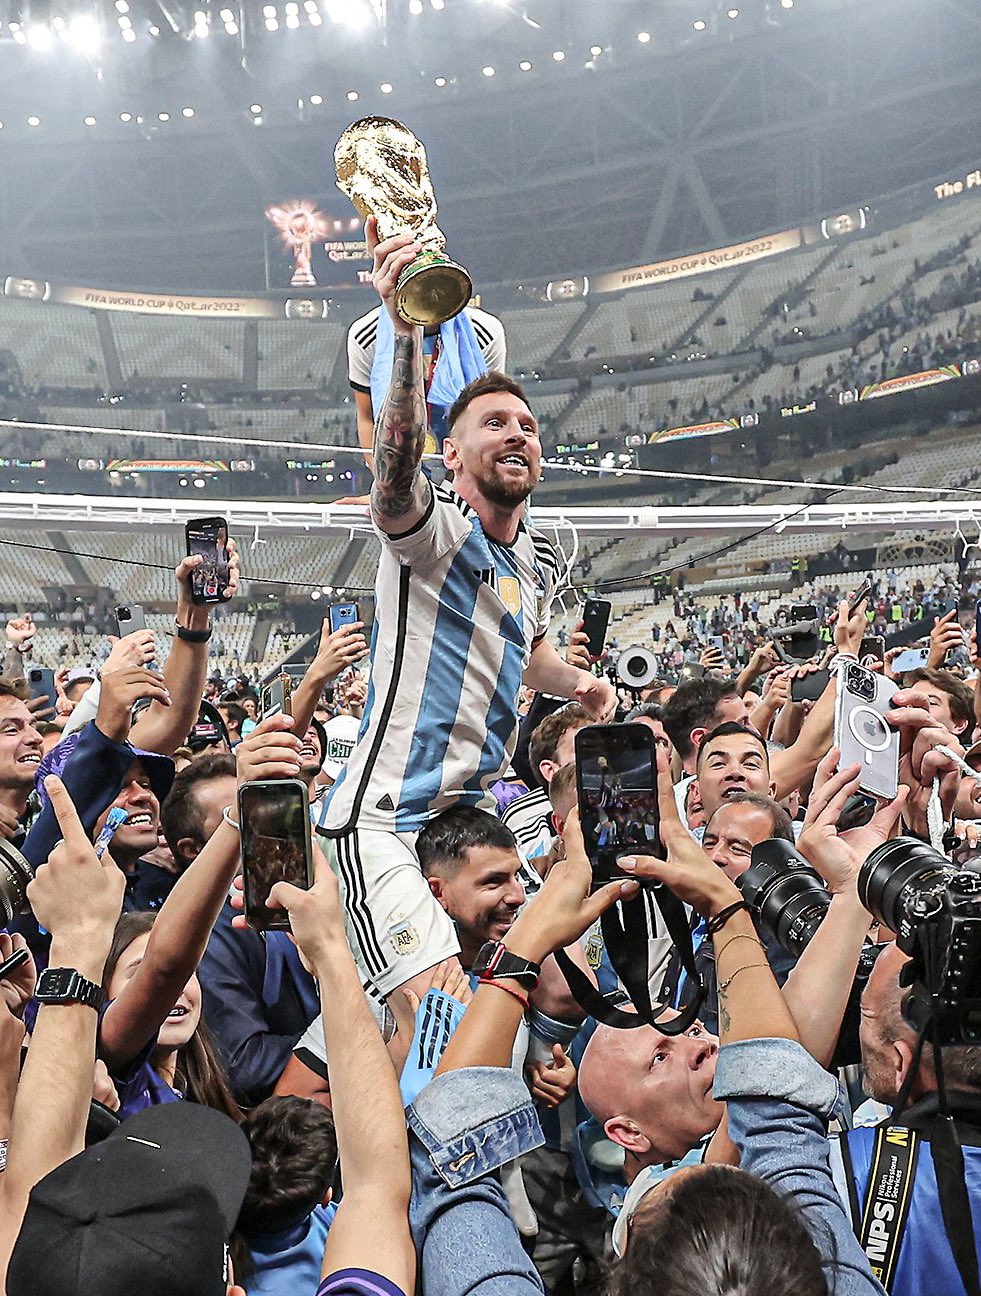 Bạn hảo ngắm Messi thi đấu ngoạn mục? Hình ảnh này sẽ khiến bạn thấy thích thú đấy.